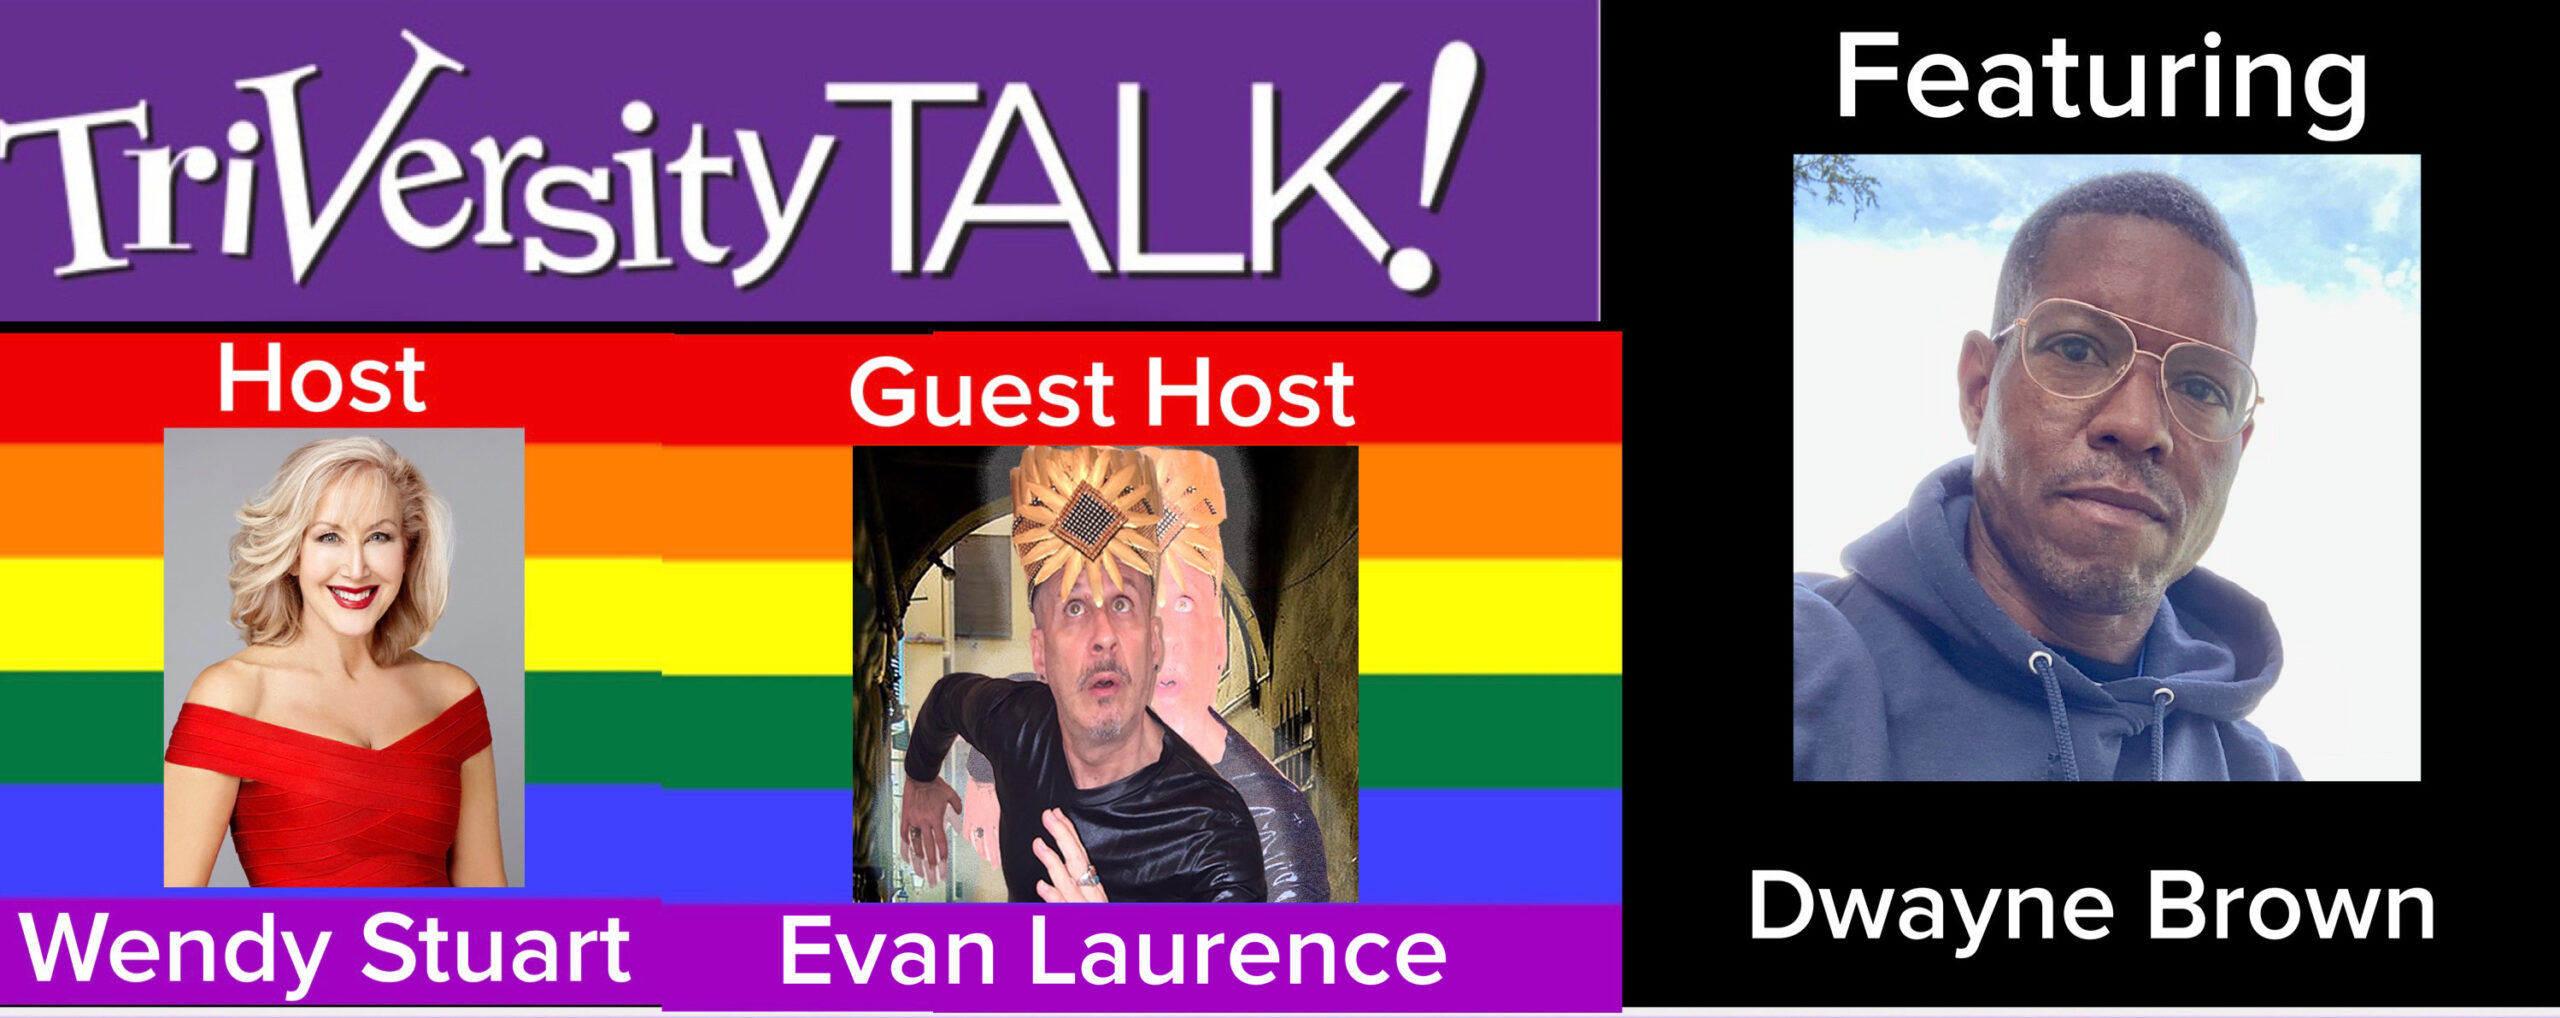 Wendy Stuart & Co-Host Evan Laurence Present TriVersity Talk! 7/24/24 7 PM ET w/Guest Dwayne Brown